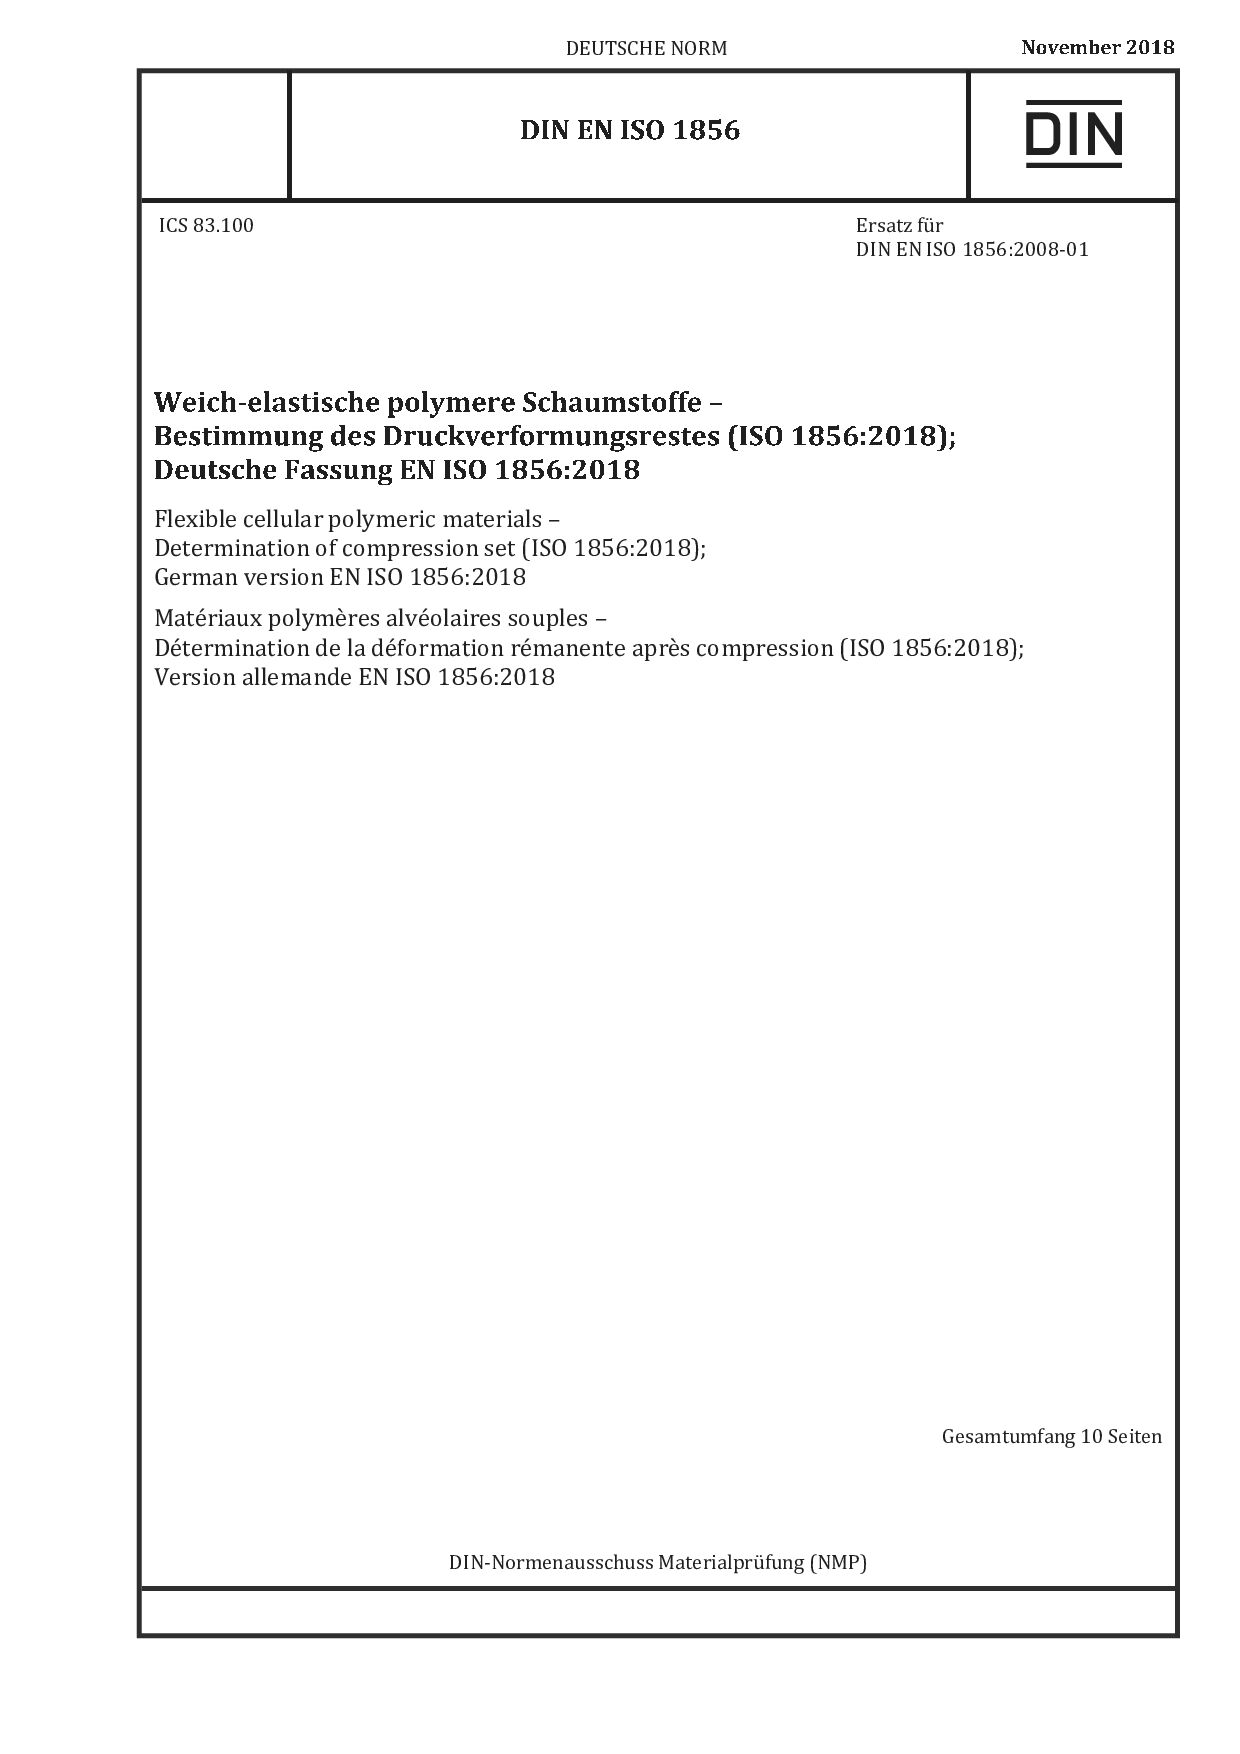 DIN EN ISO 1856:2018封面图